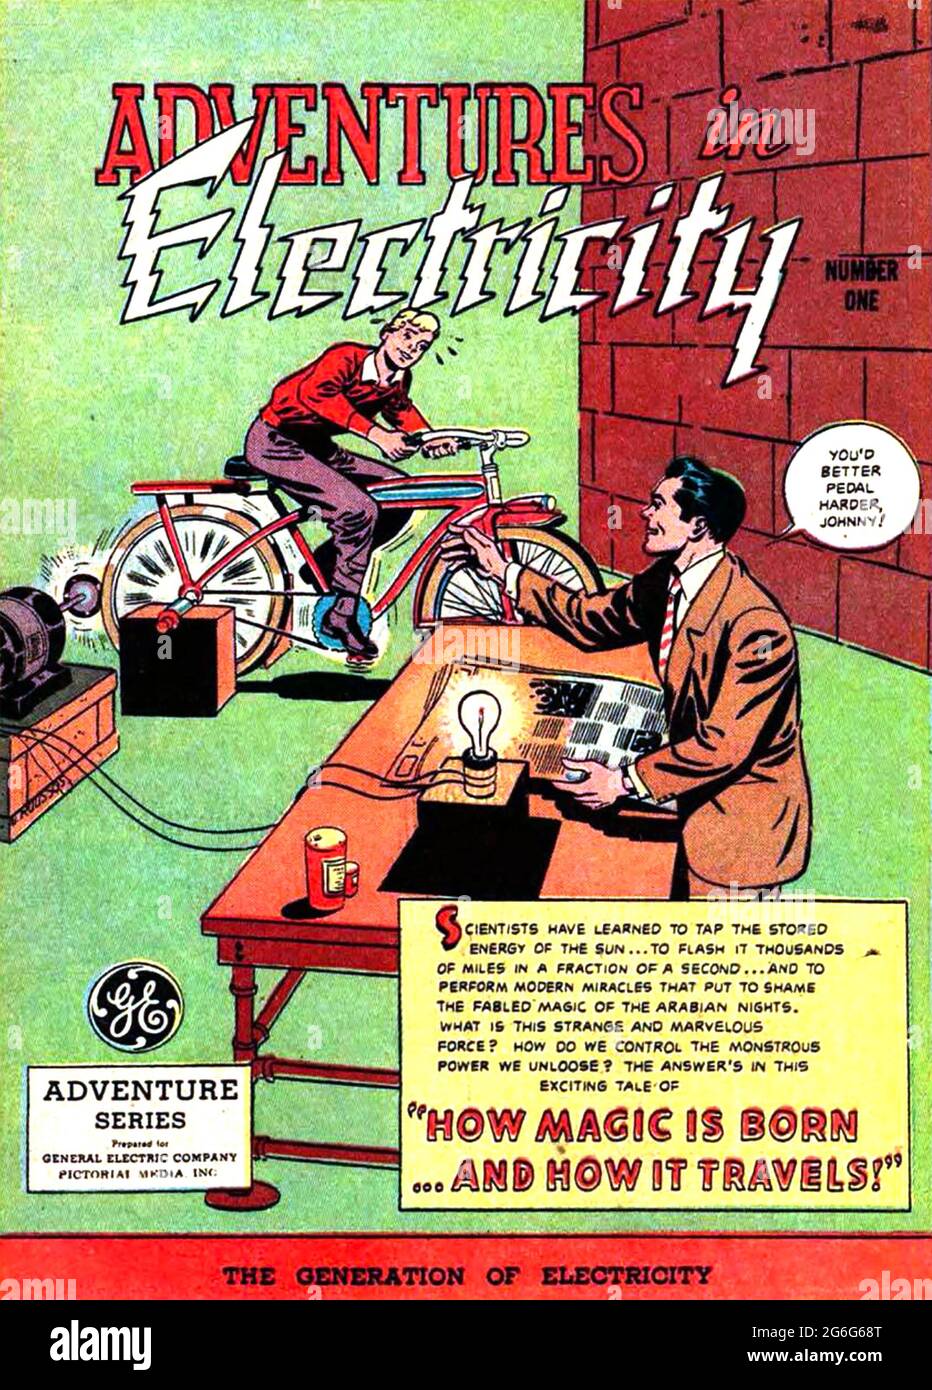 ABENTEUER IM STROM amerikanische Zeitschrift unter dem GE (General Electric)-Aufdruck im Jahr 1946 für junge Enthusiasten konzipiert. Stockfoto